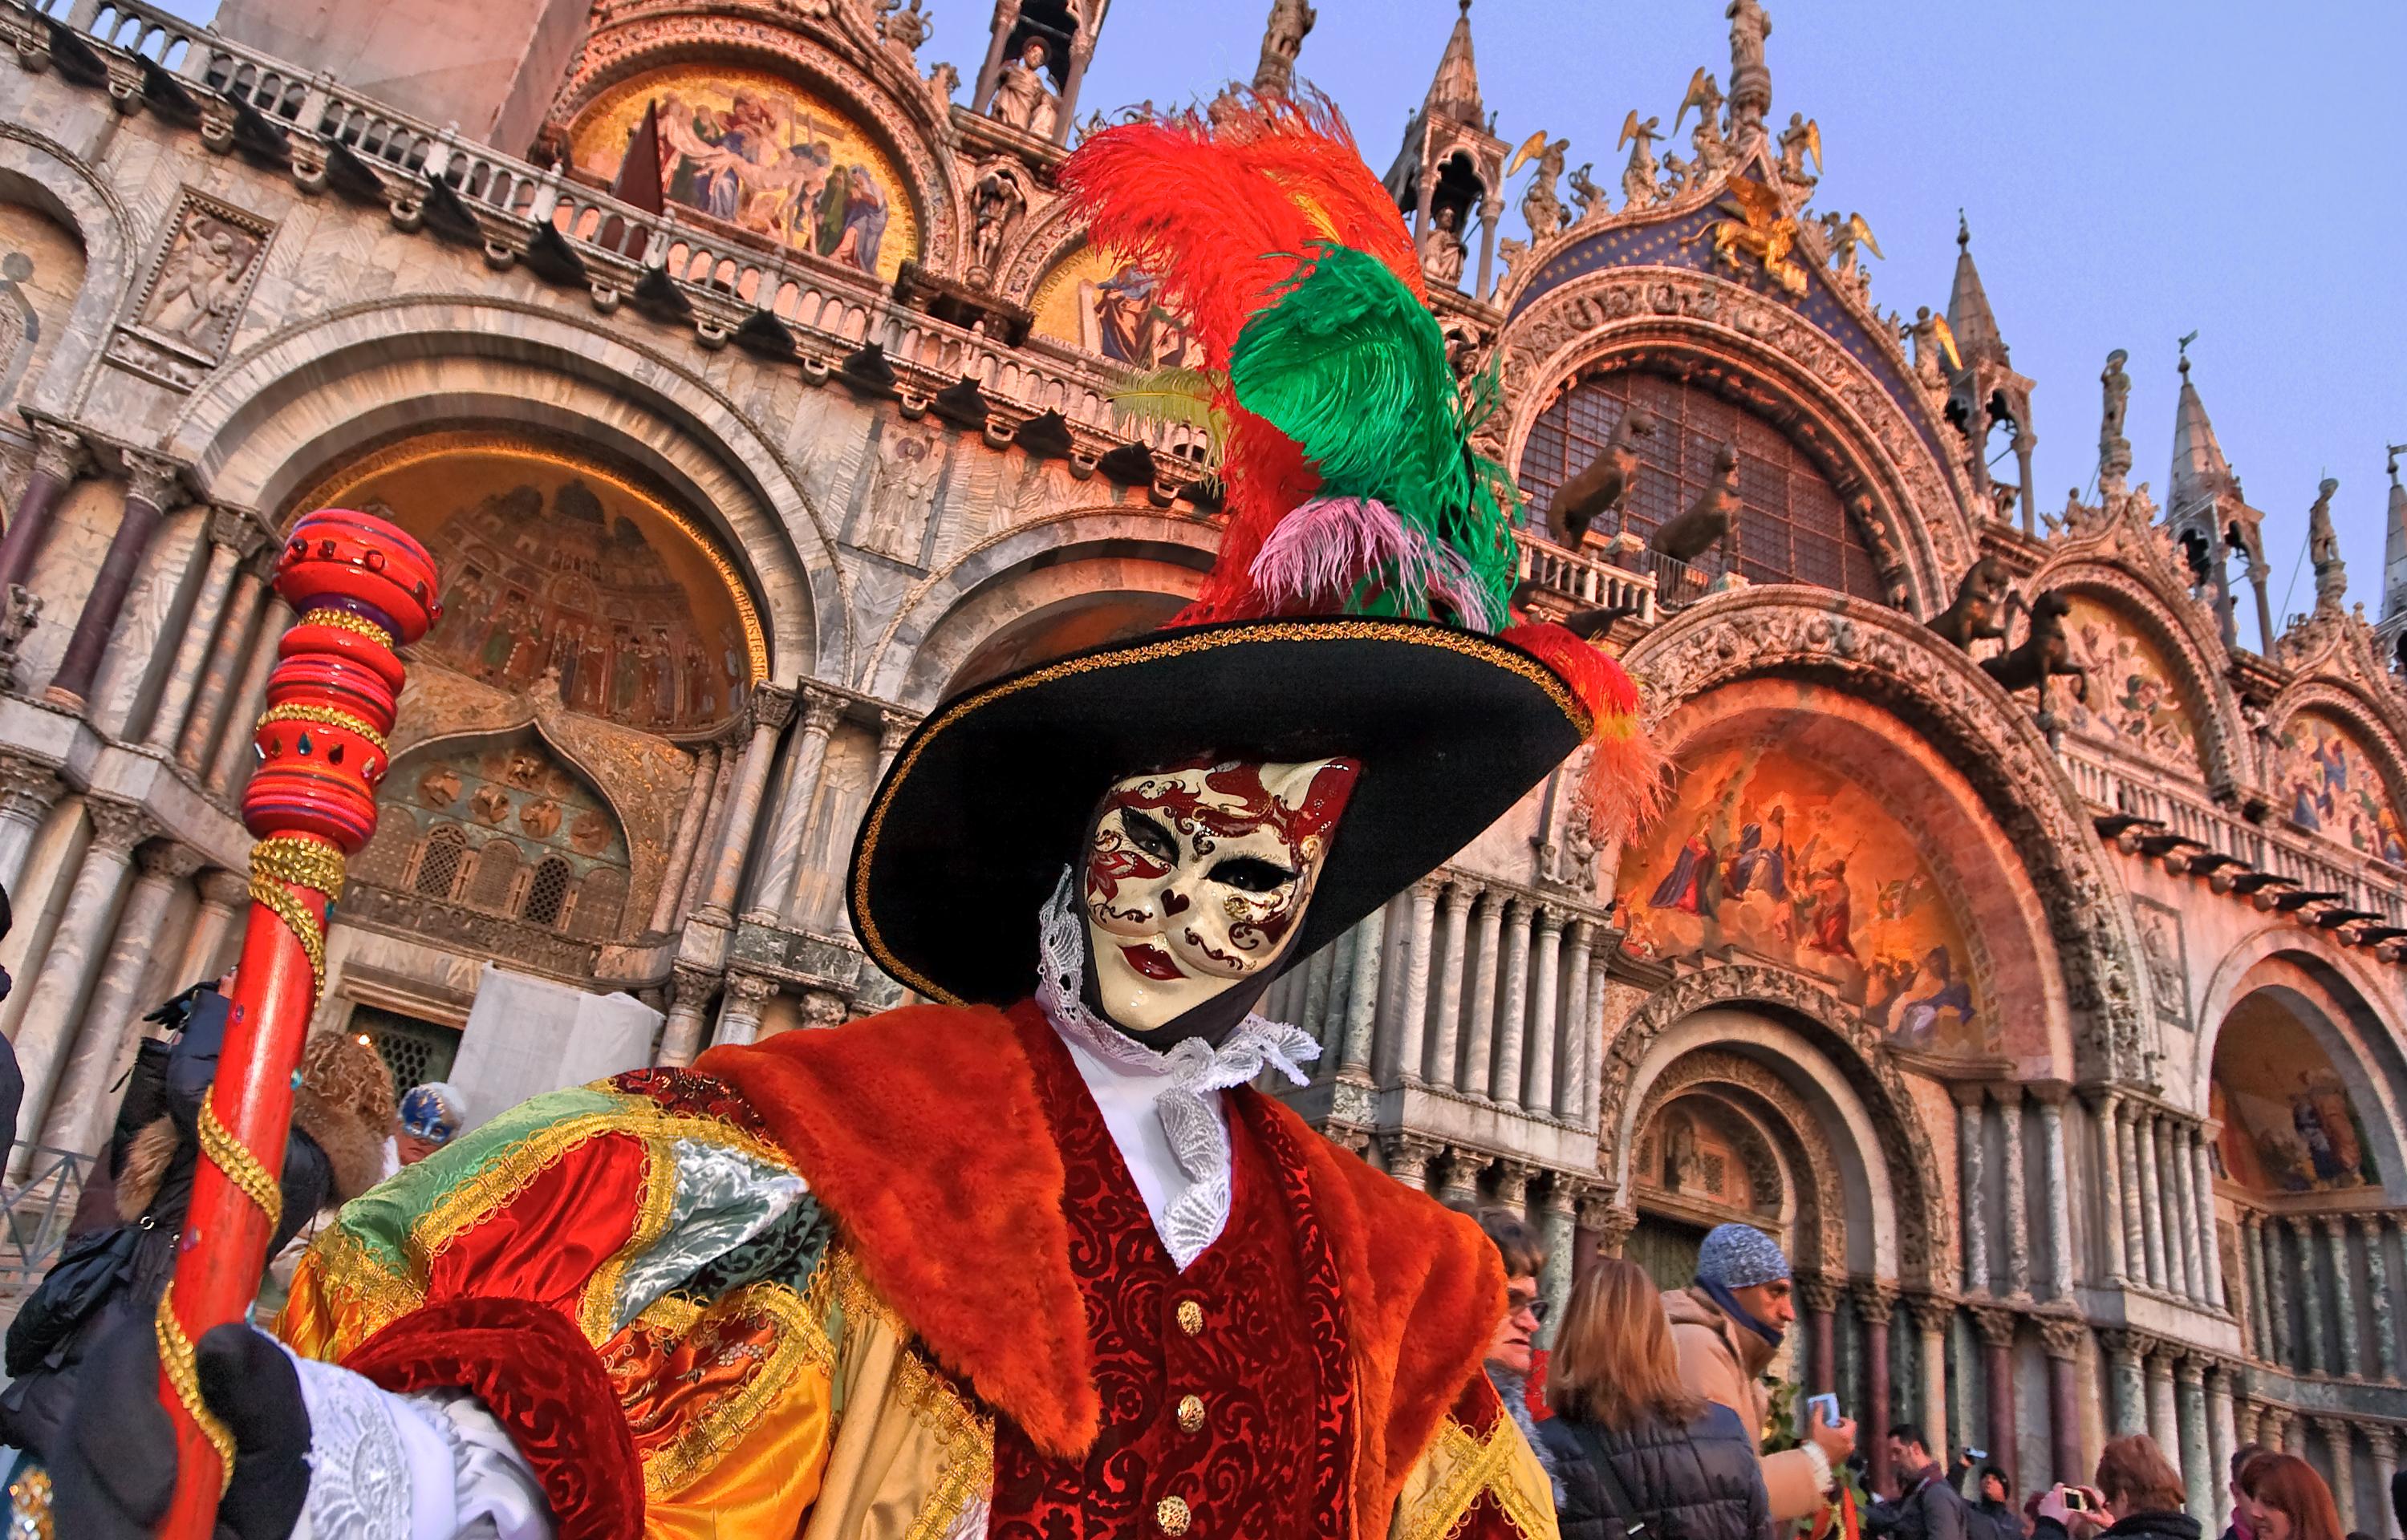 Carnaval de Veneza: Baile de máscaras em um palácio veneziano com locação de figurinos incluído